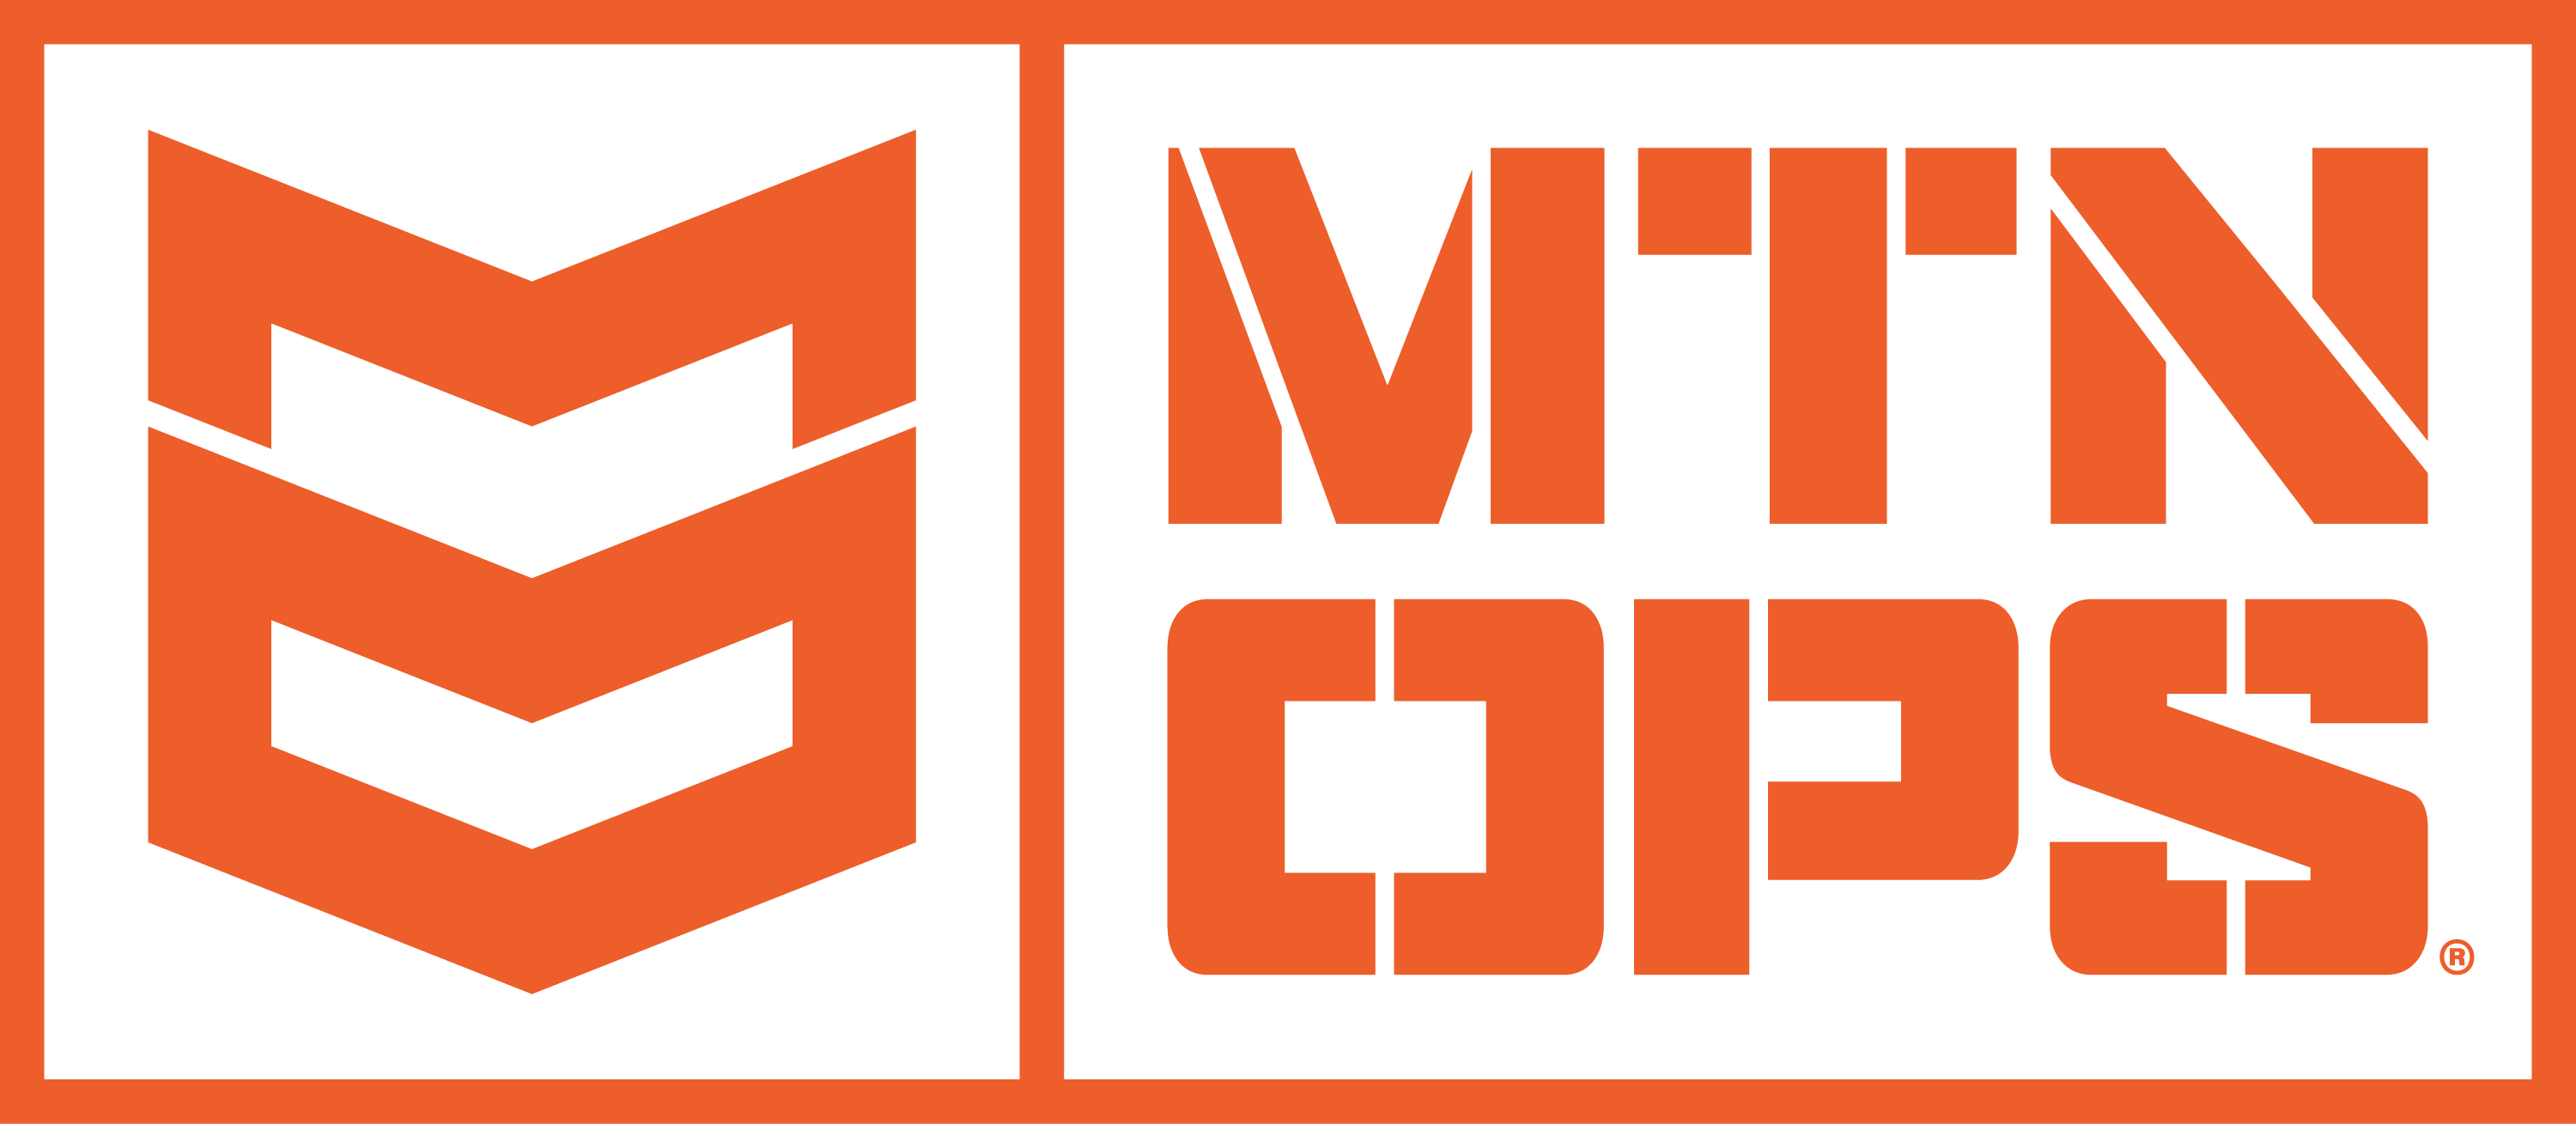 mtn ops logo